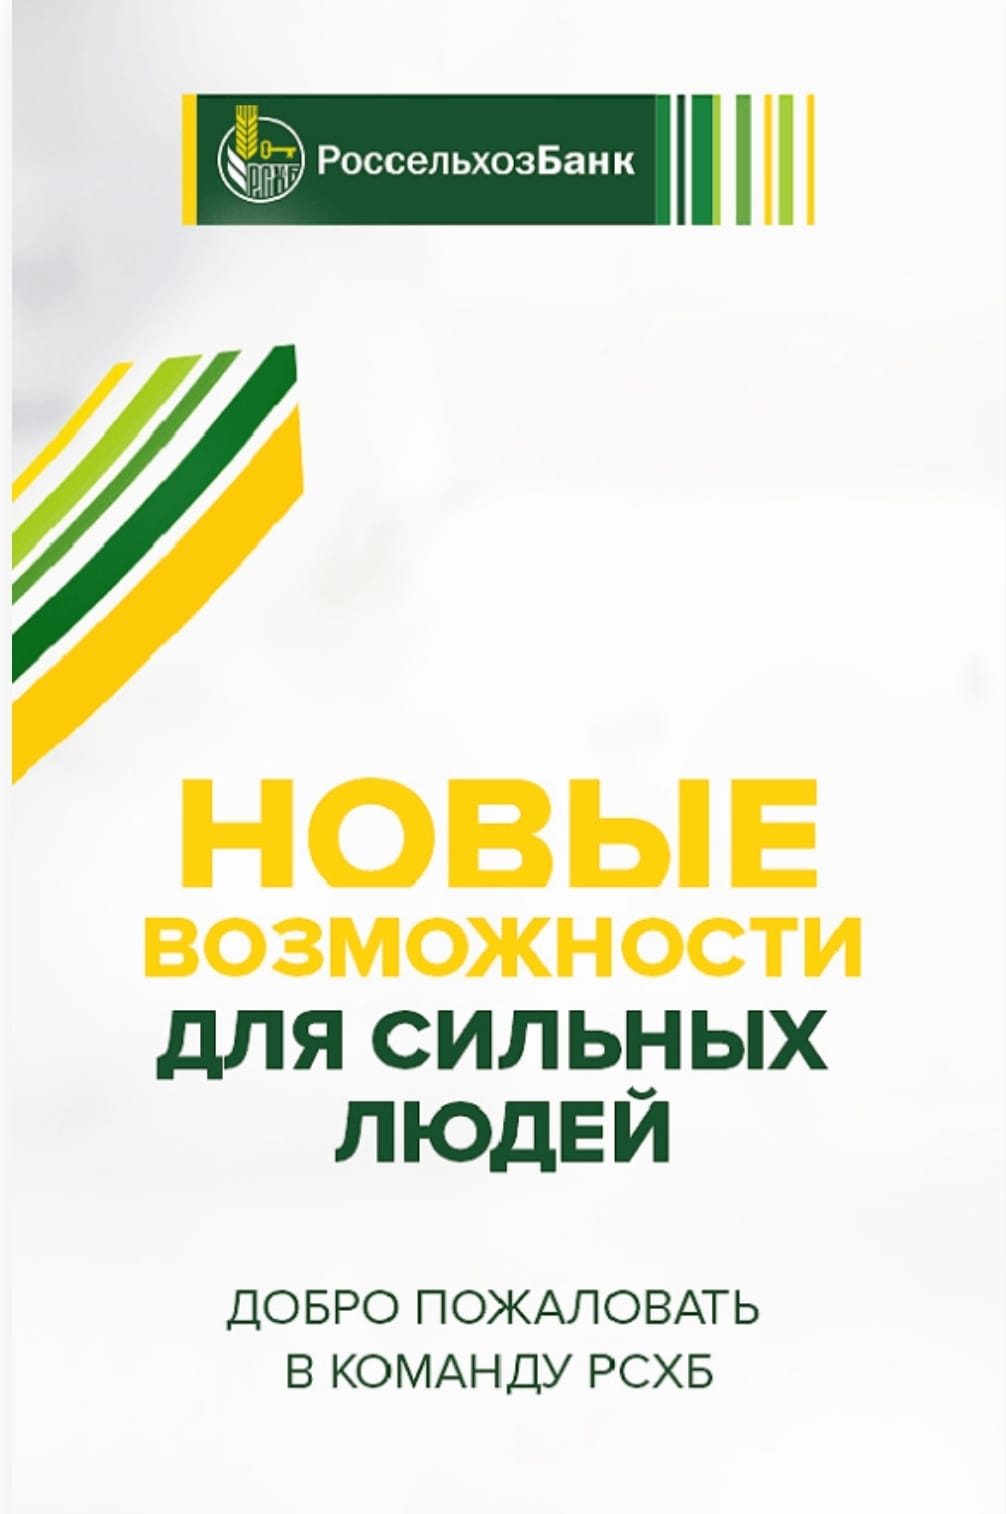 АО «Российский сельскохозяйственный банк»